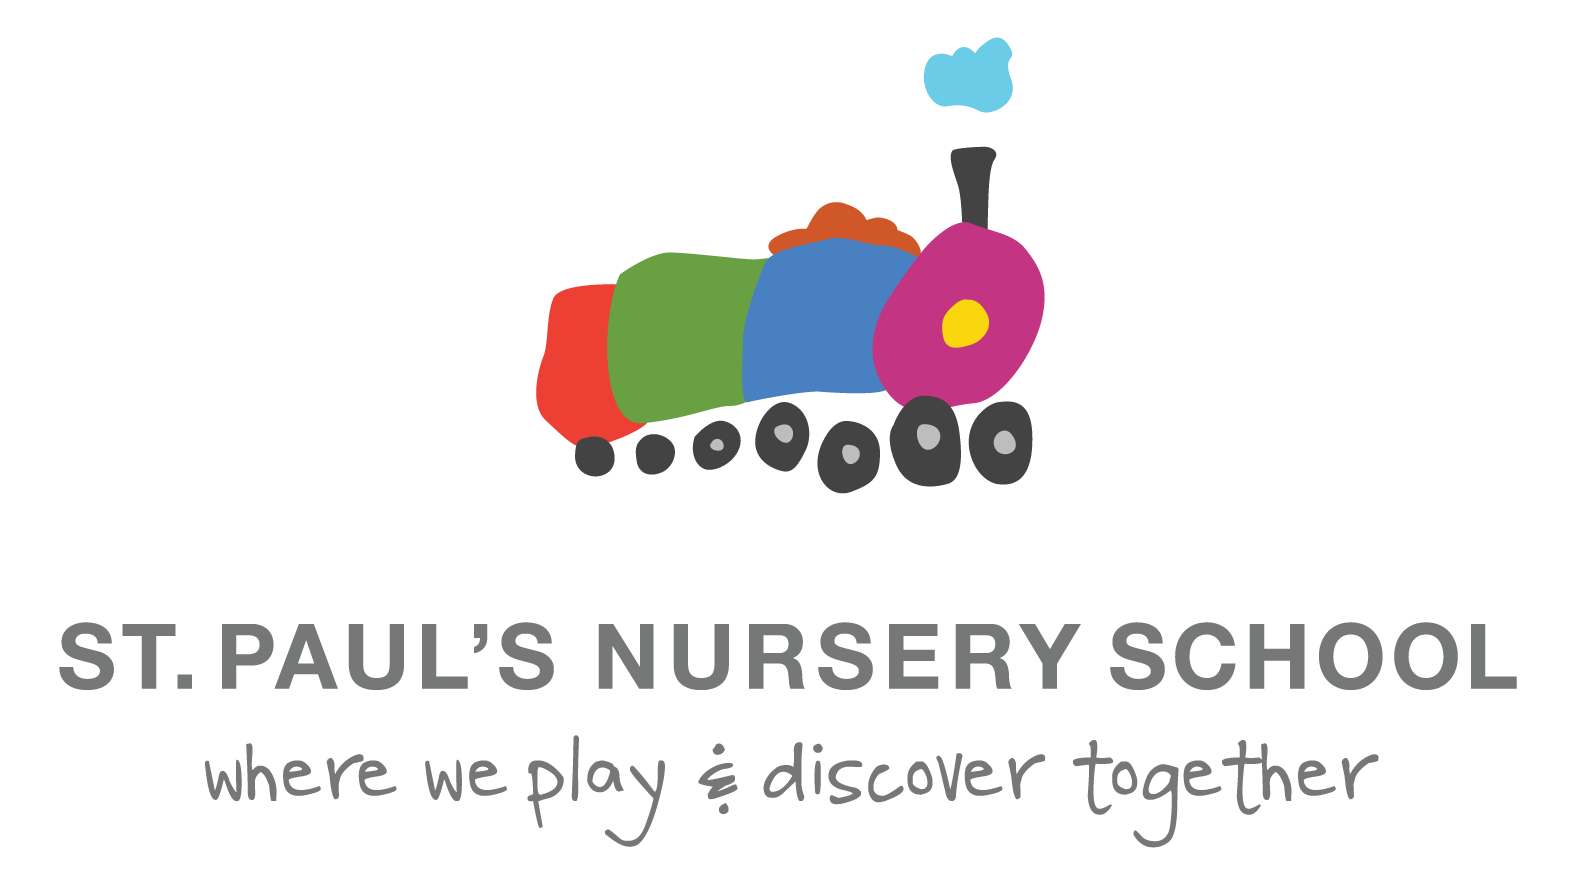 St. Paul's Nursery School